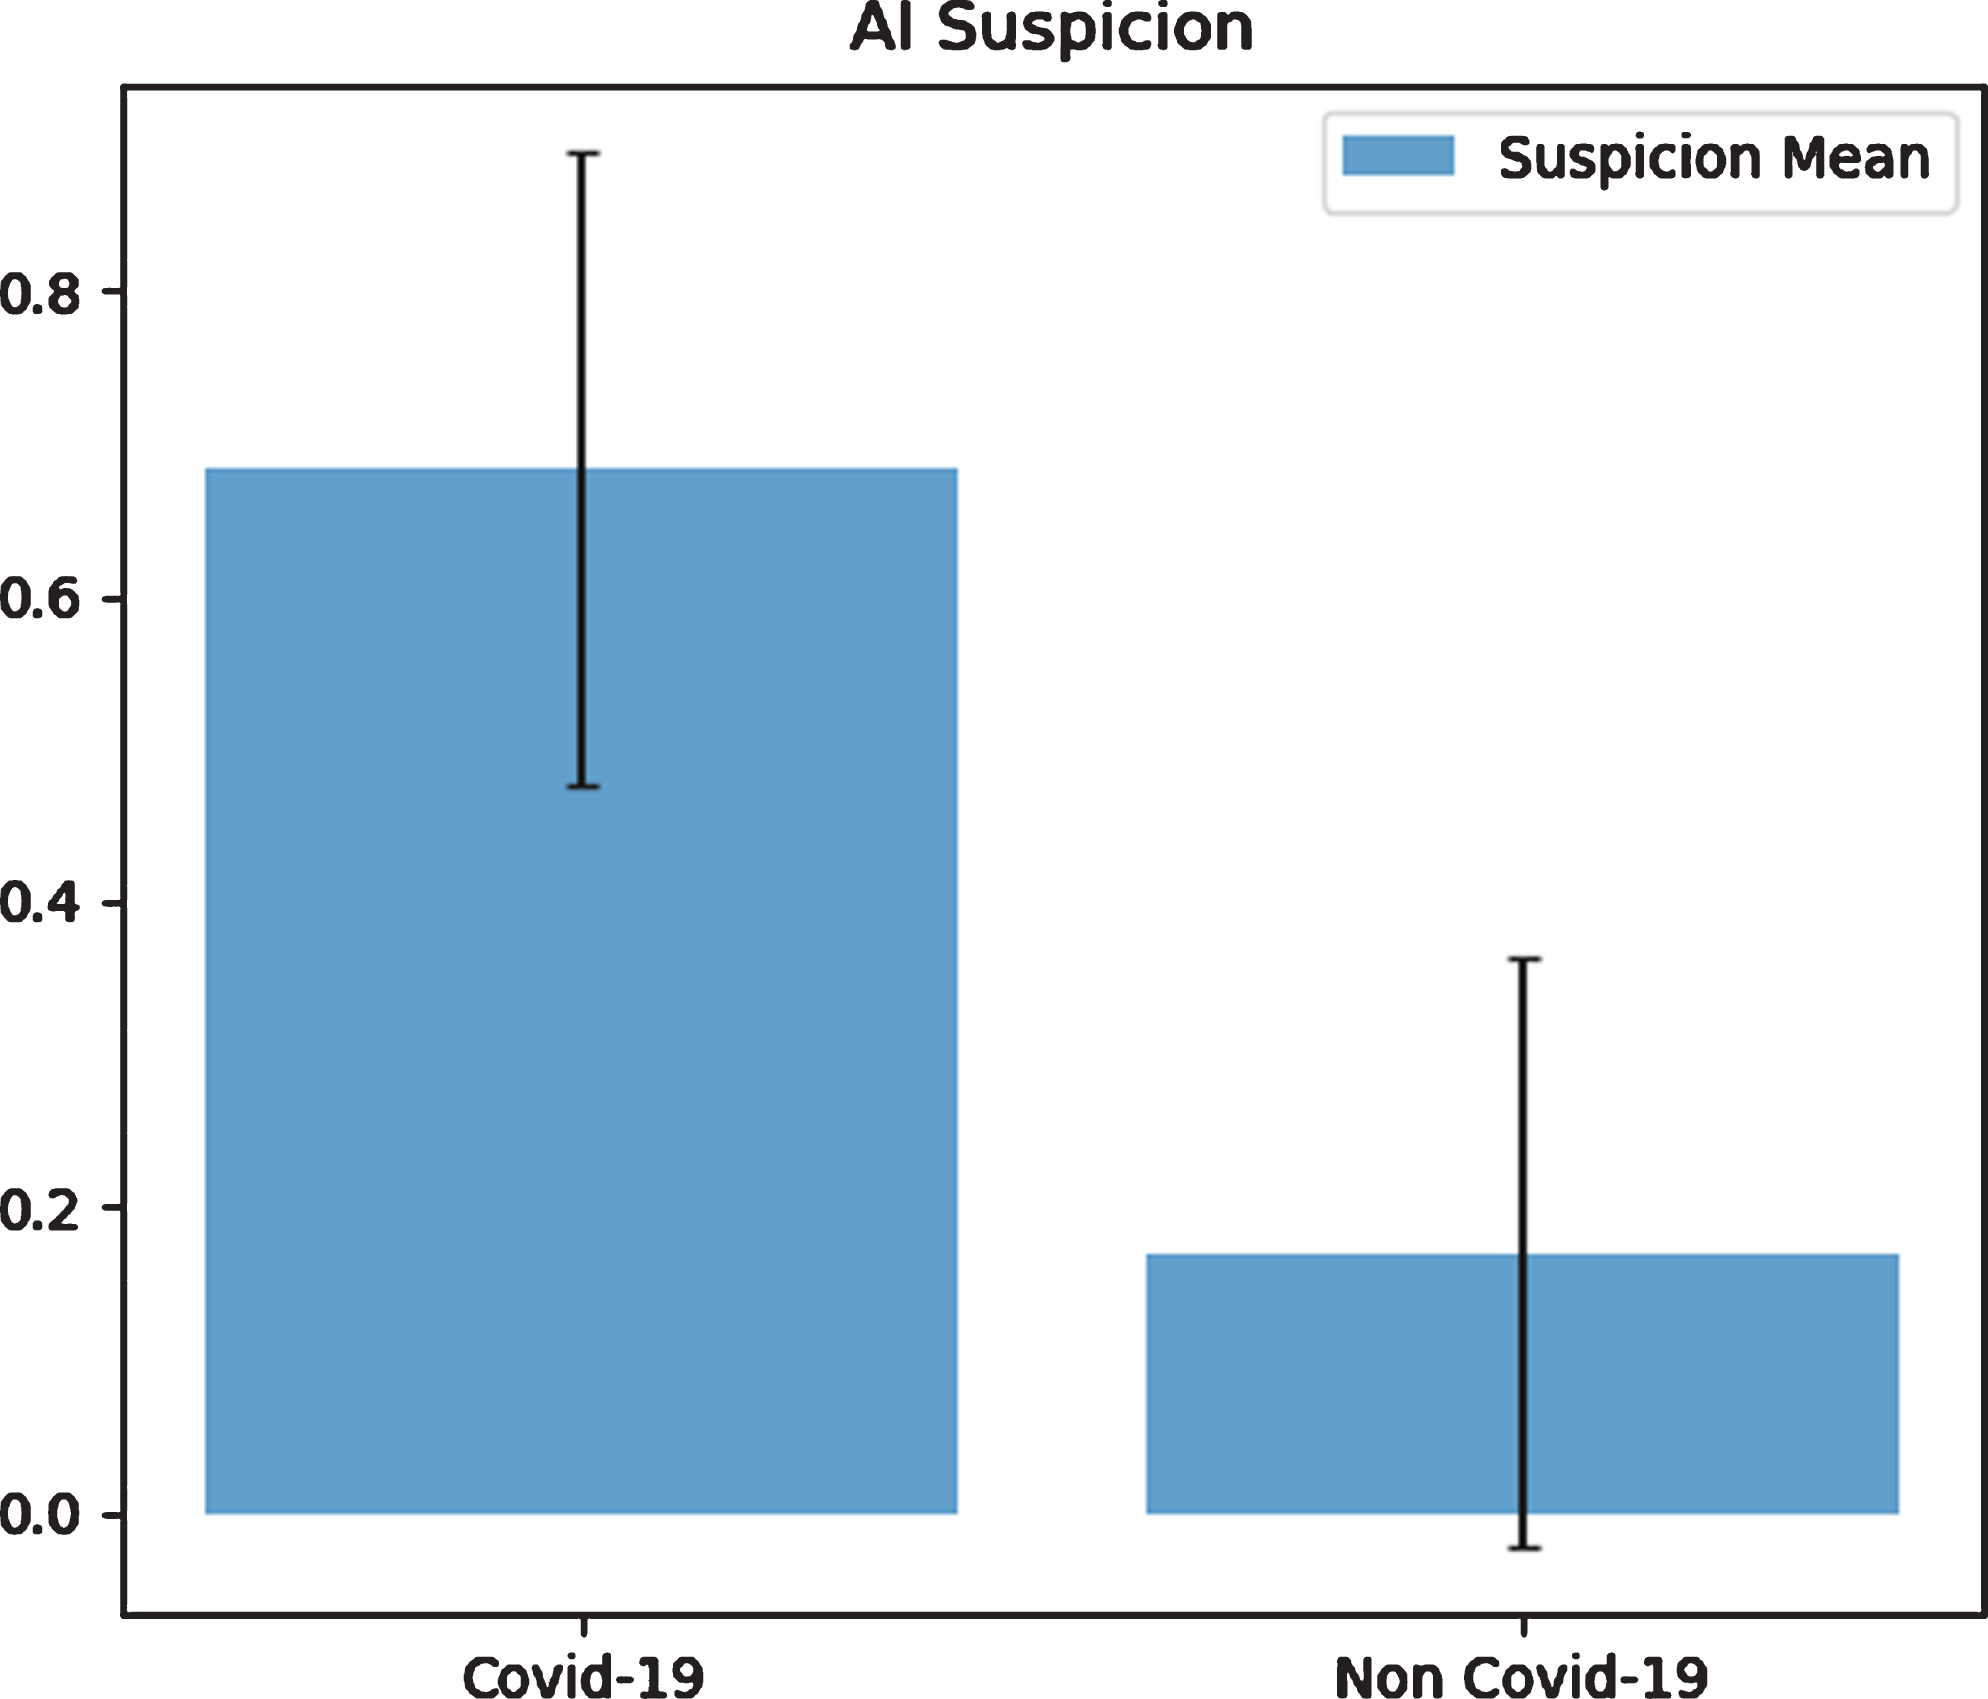 COVID-19 and non-COVID-19 suspicion by using AI.